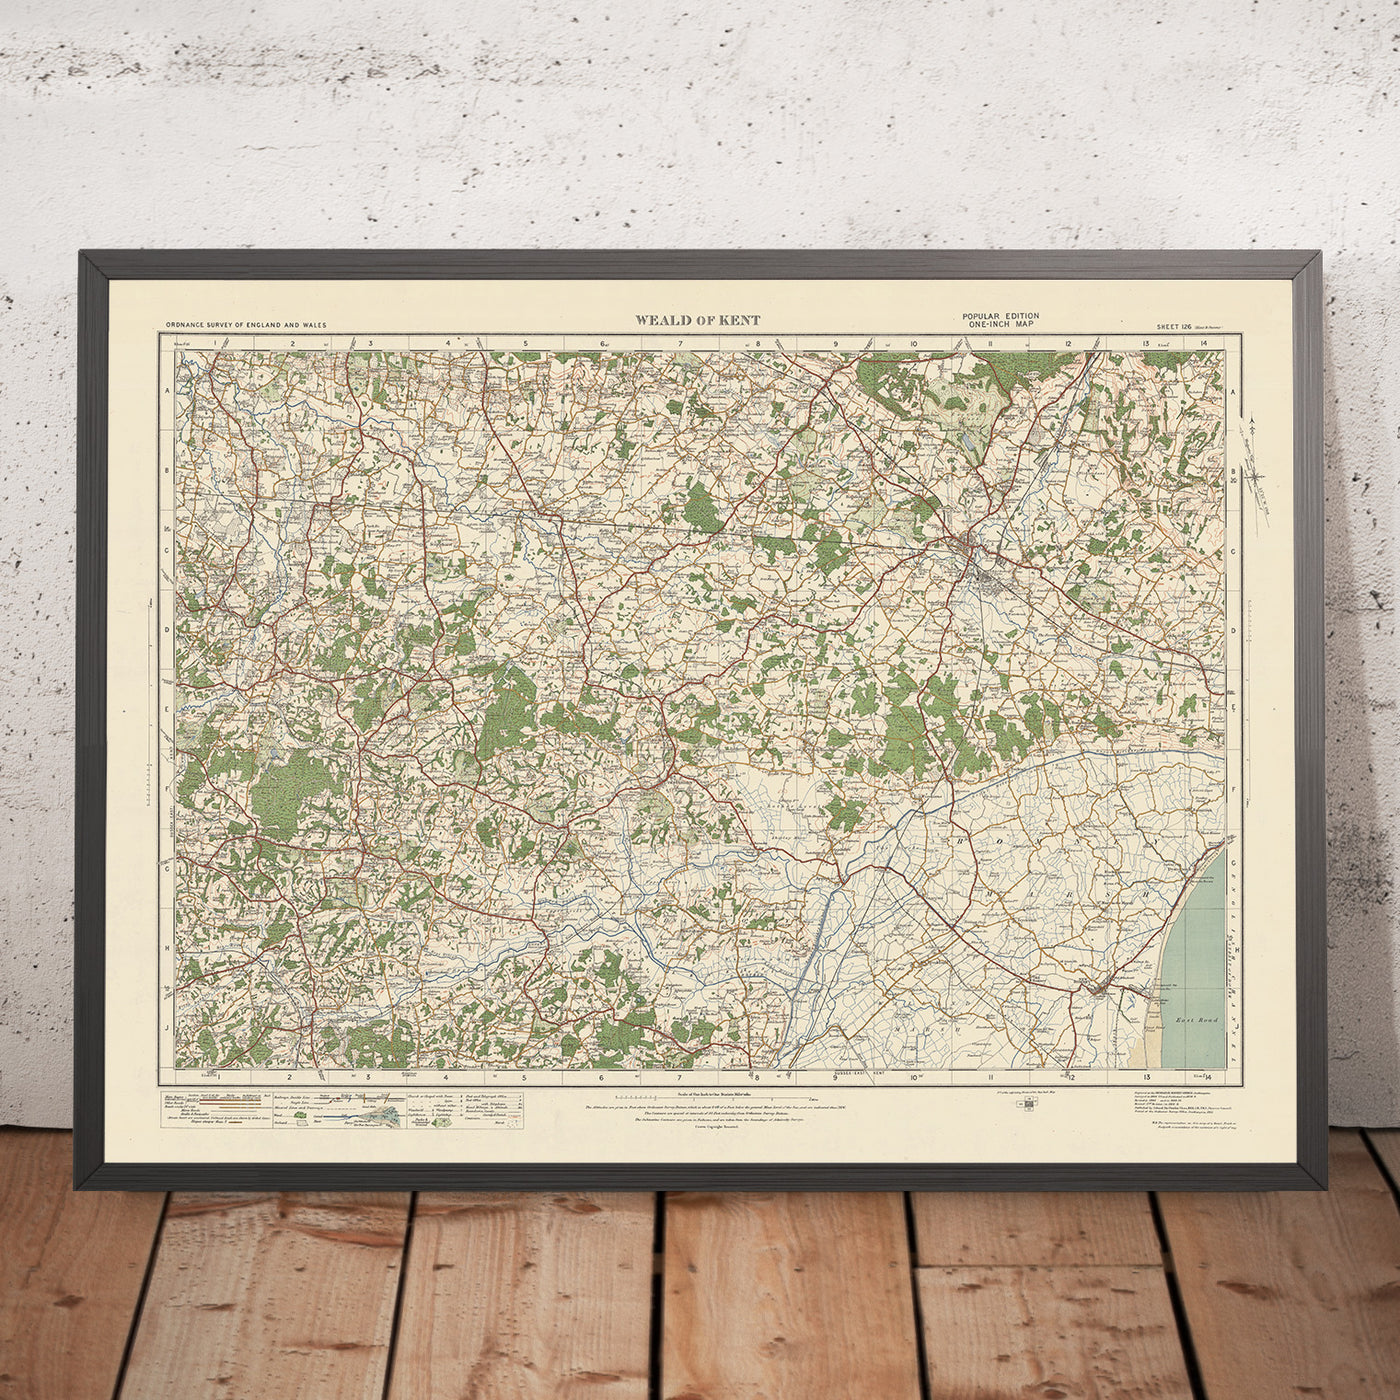 Old Ordnance Survey Map, Sheet 126 - Weald of Kent, 1925: Ashford, New Romney, Tenterden, Cranbrook, High Weald AONB